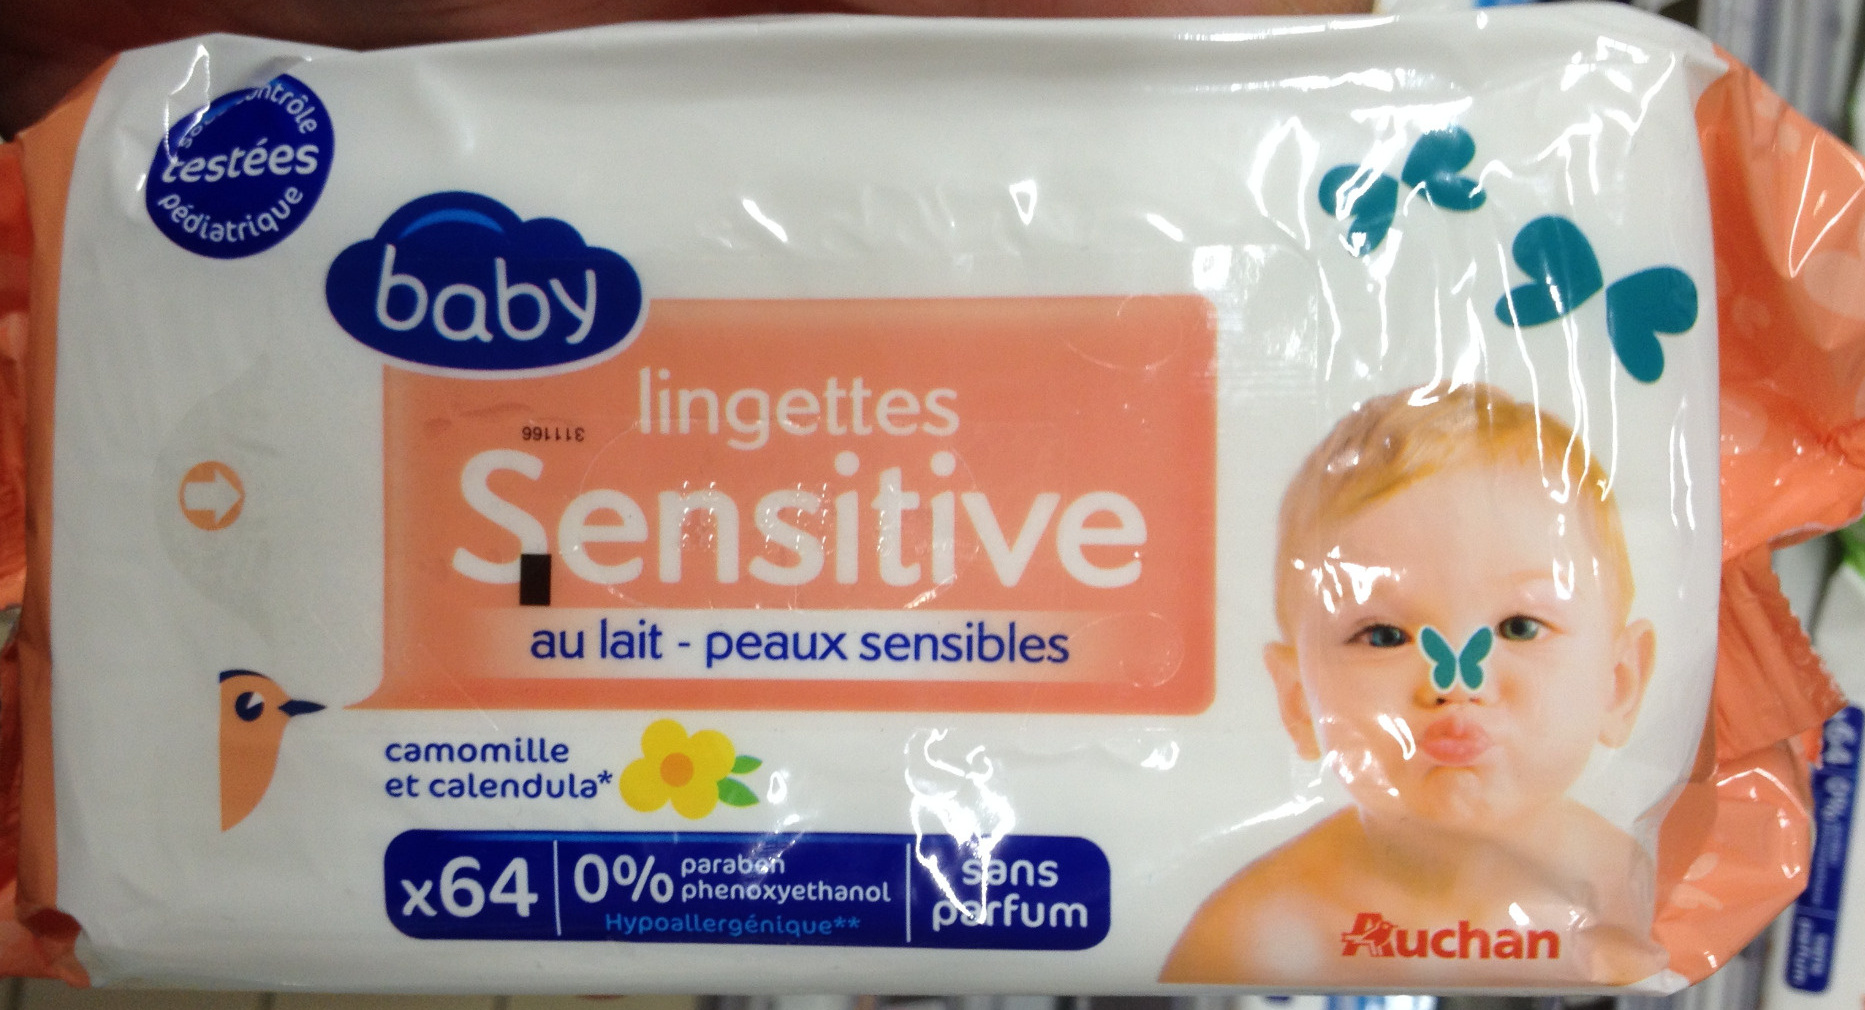 Lingettes sensitive au lait - peaux sensibles - Product - fr